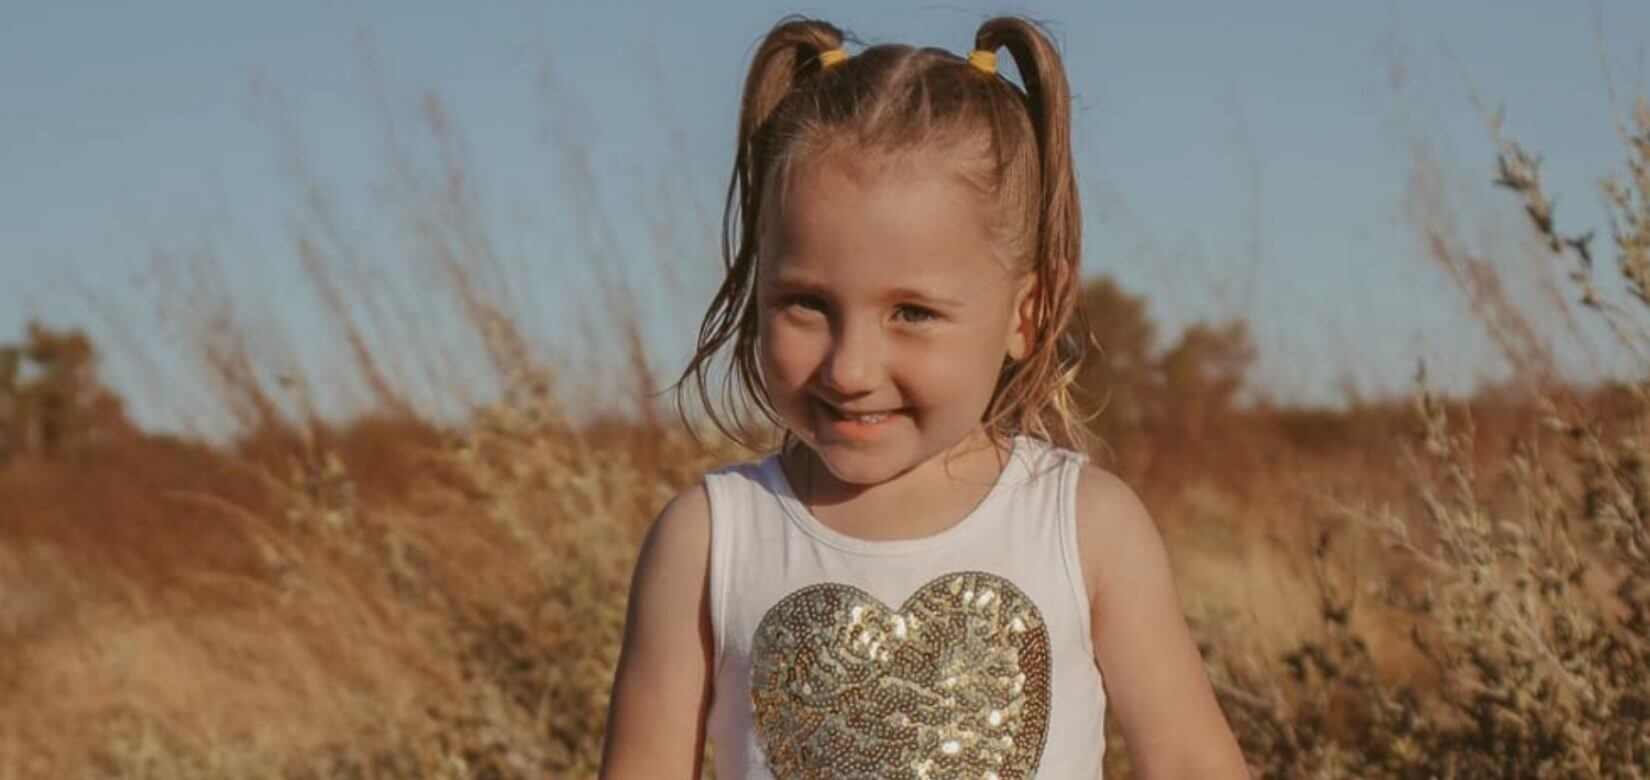 Αγωνία για την εξαφάνιση μίας 4χρονης από κάμπινγκ στην Αυστραλία - Κλίο, όπως Μαντλίν;